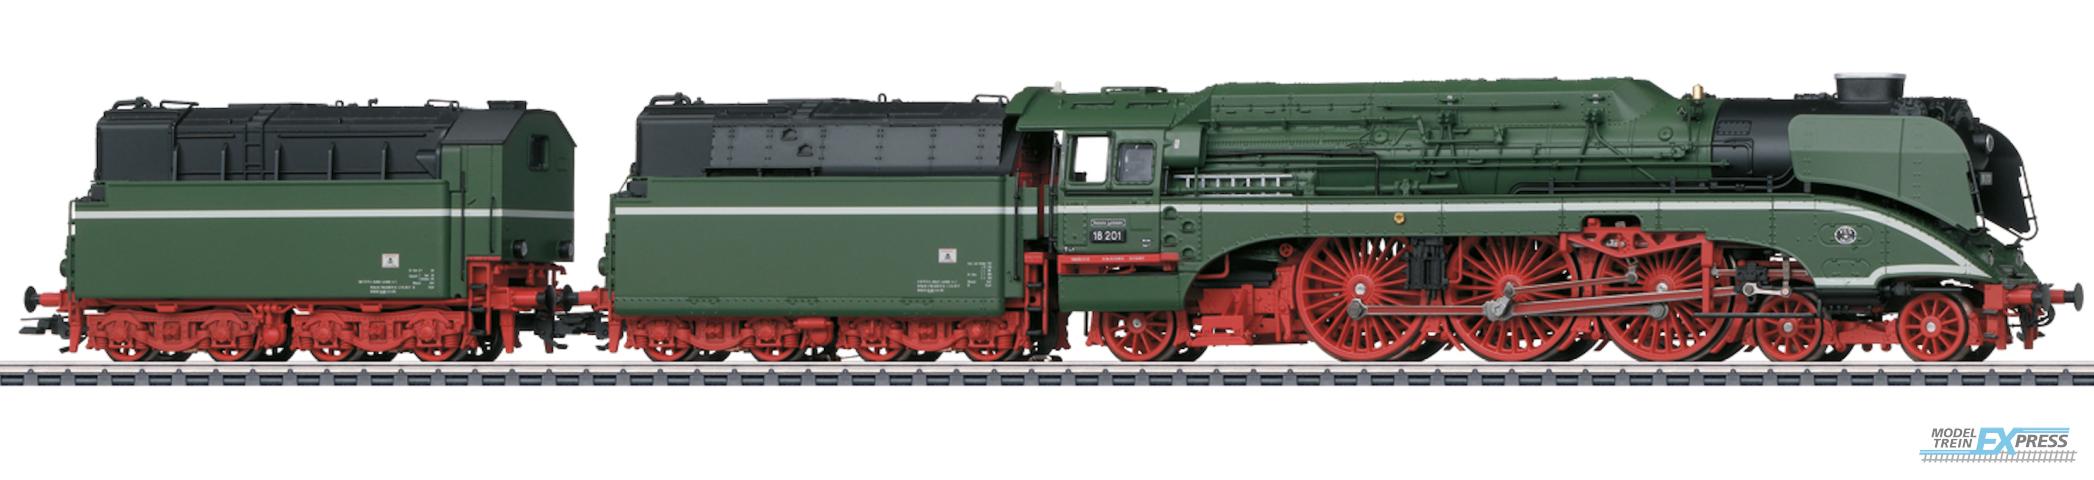 Trix 25020 Dampflokomotive 18 201 'der gruene dampflokstar'